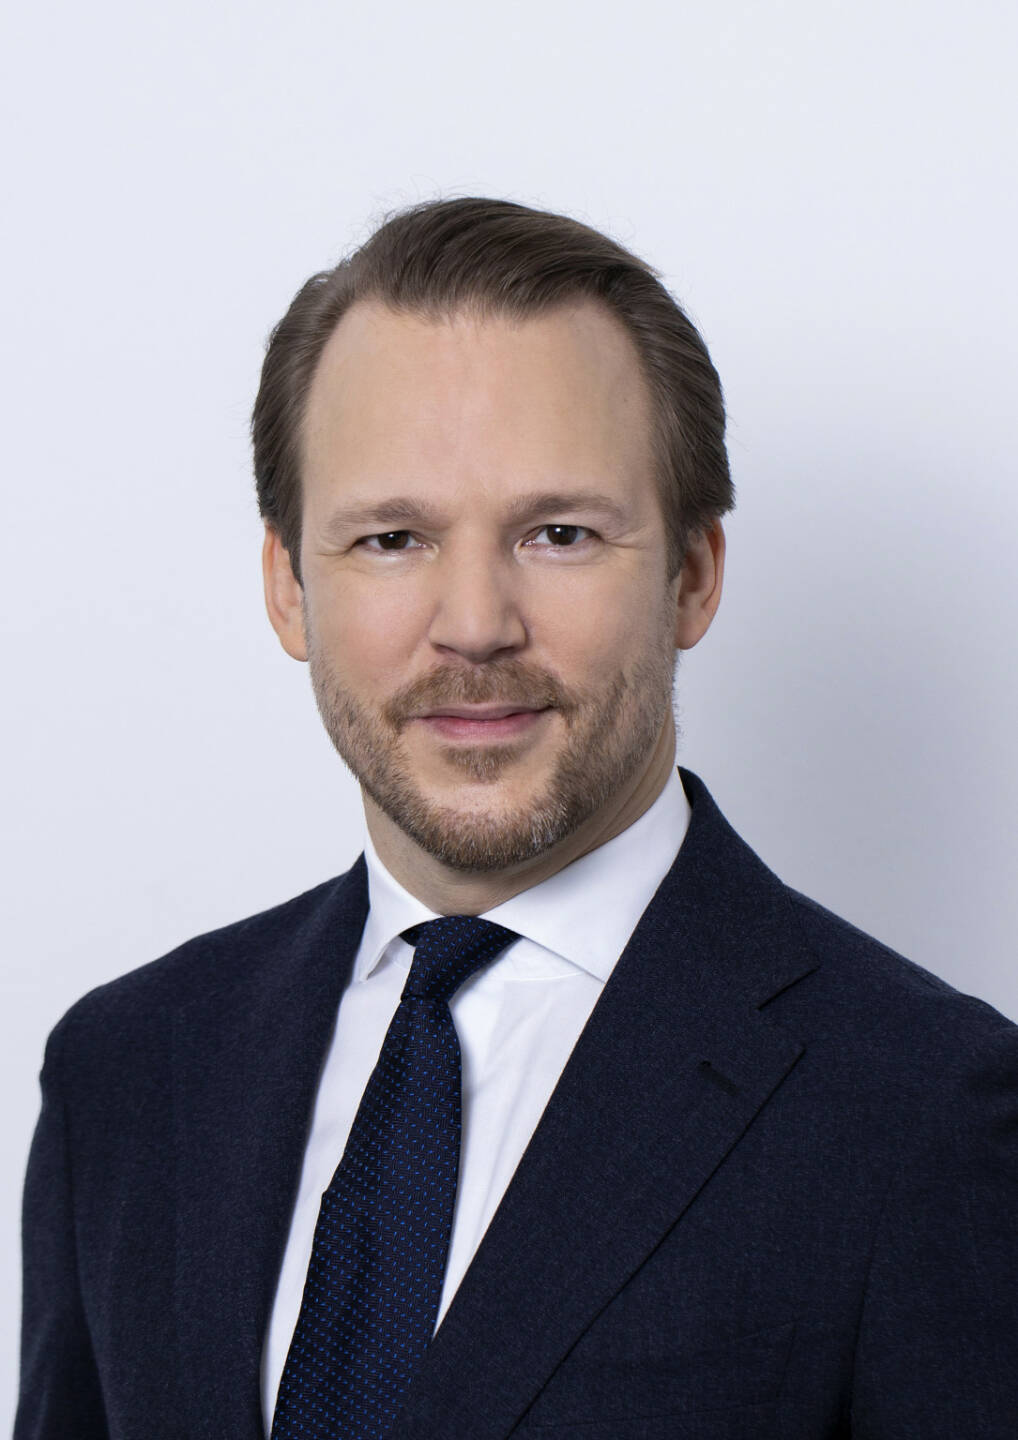 Marc Lager übernimmt mit Februar 2020 den Auf- und Ausbau des Bereiches Kartellrecht/Compliance und Außenwirtschaftsrecht bei Jank Weiler Operenyi/Deloitte Legal. Credit: Deloitte